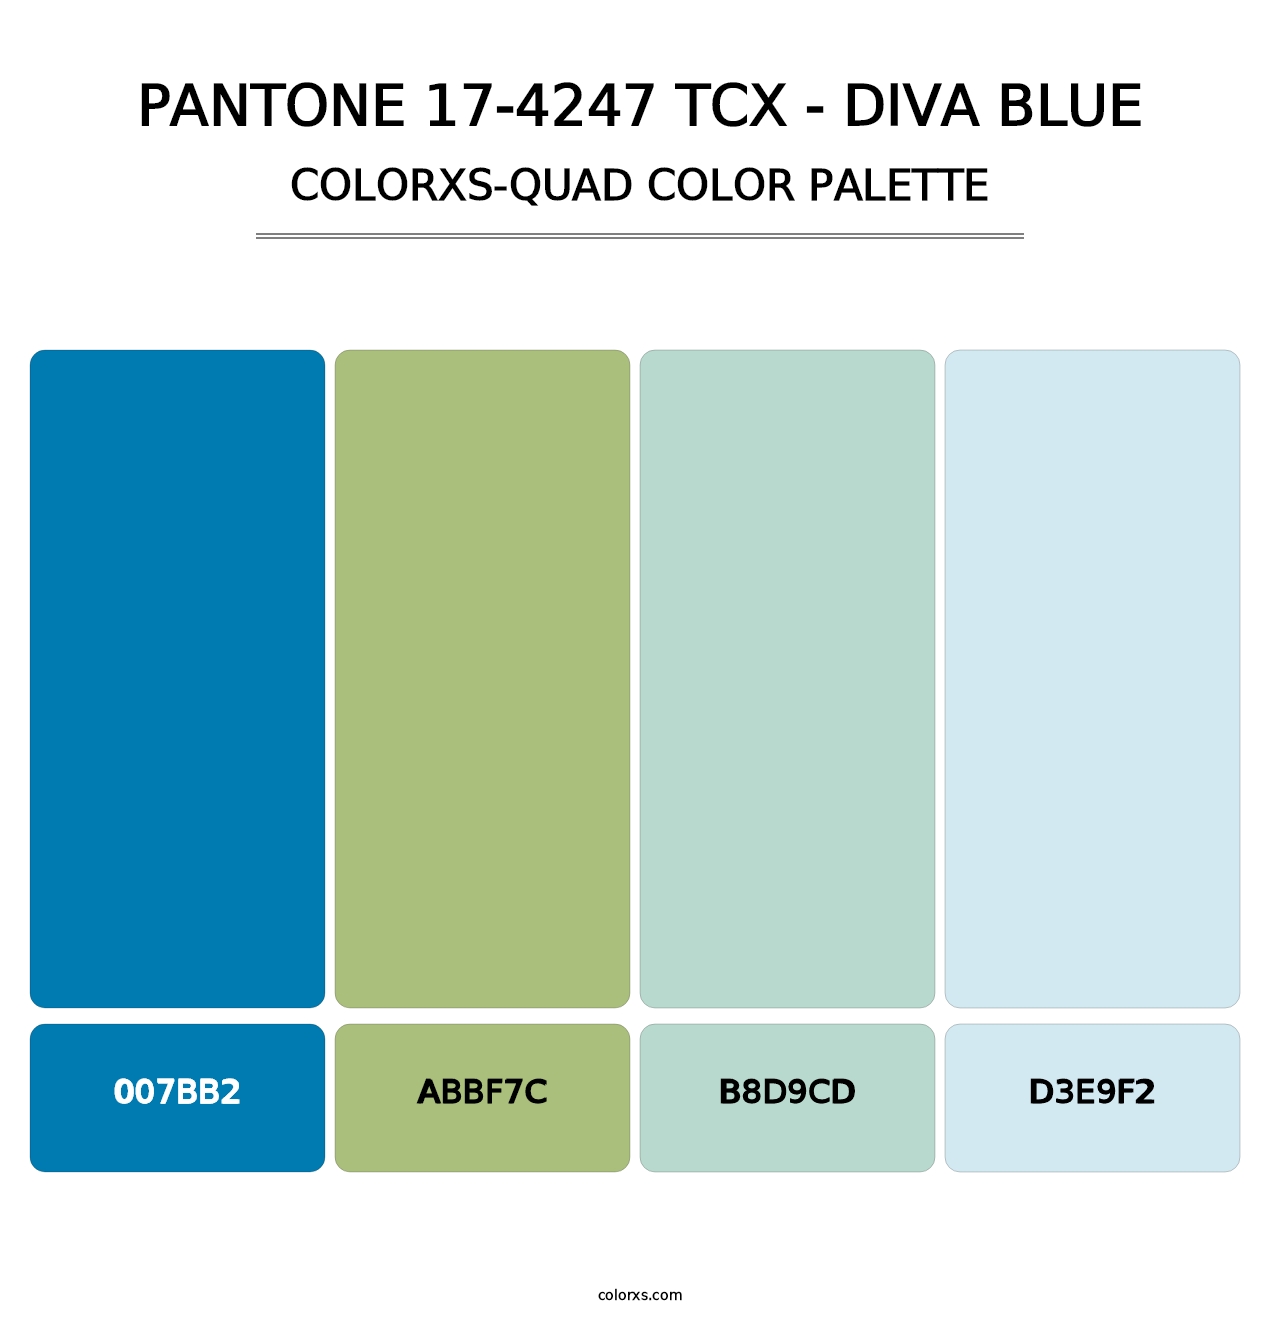 PANTONE 17-4247 TCX - Diva Blue - Colorxs Quad Palette